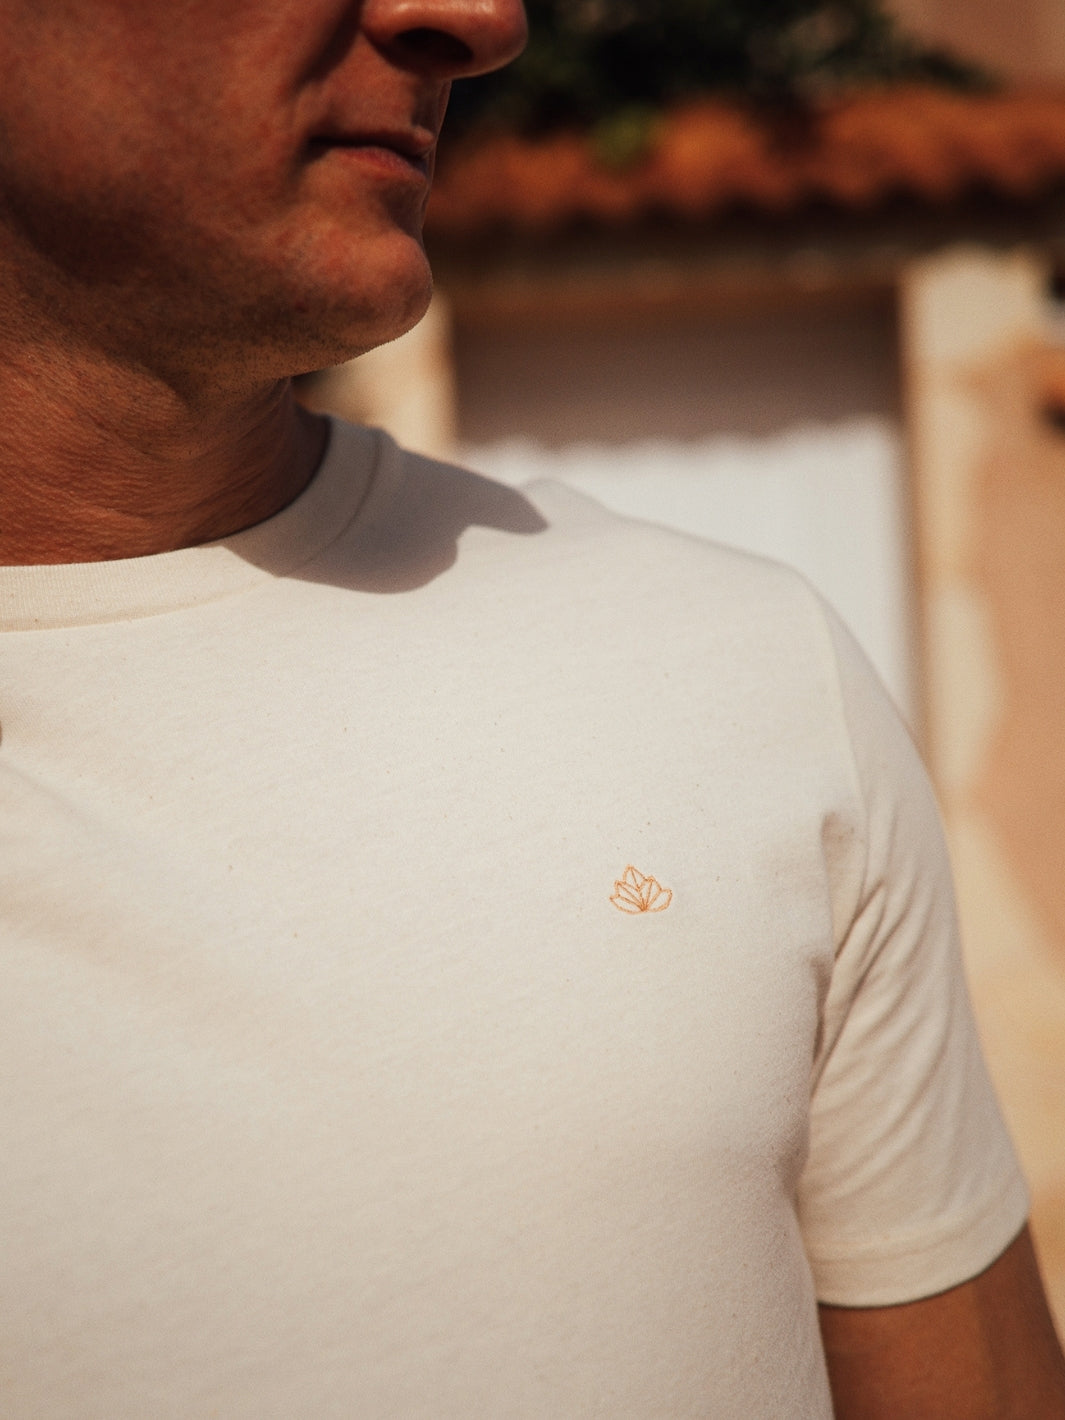 Feel pánské tričko z biobavlny s kulatým výstřihem přírodní nebarvené detailní fotografie trička s vyšívaným logem